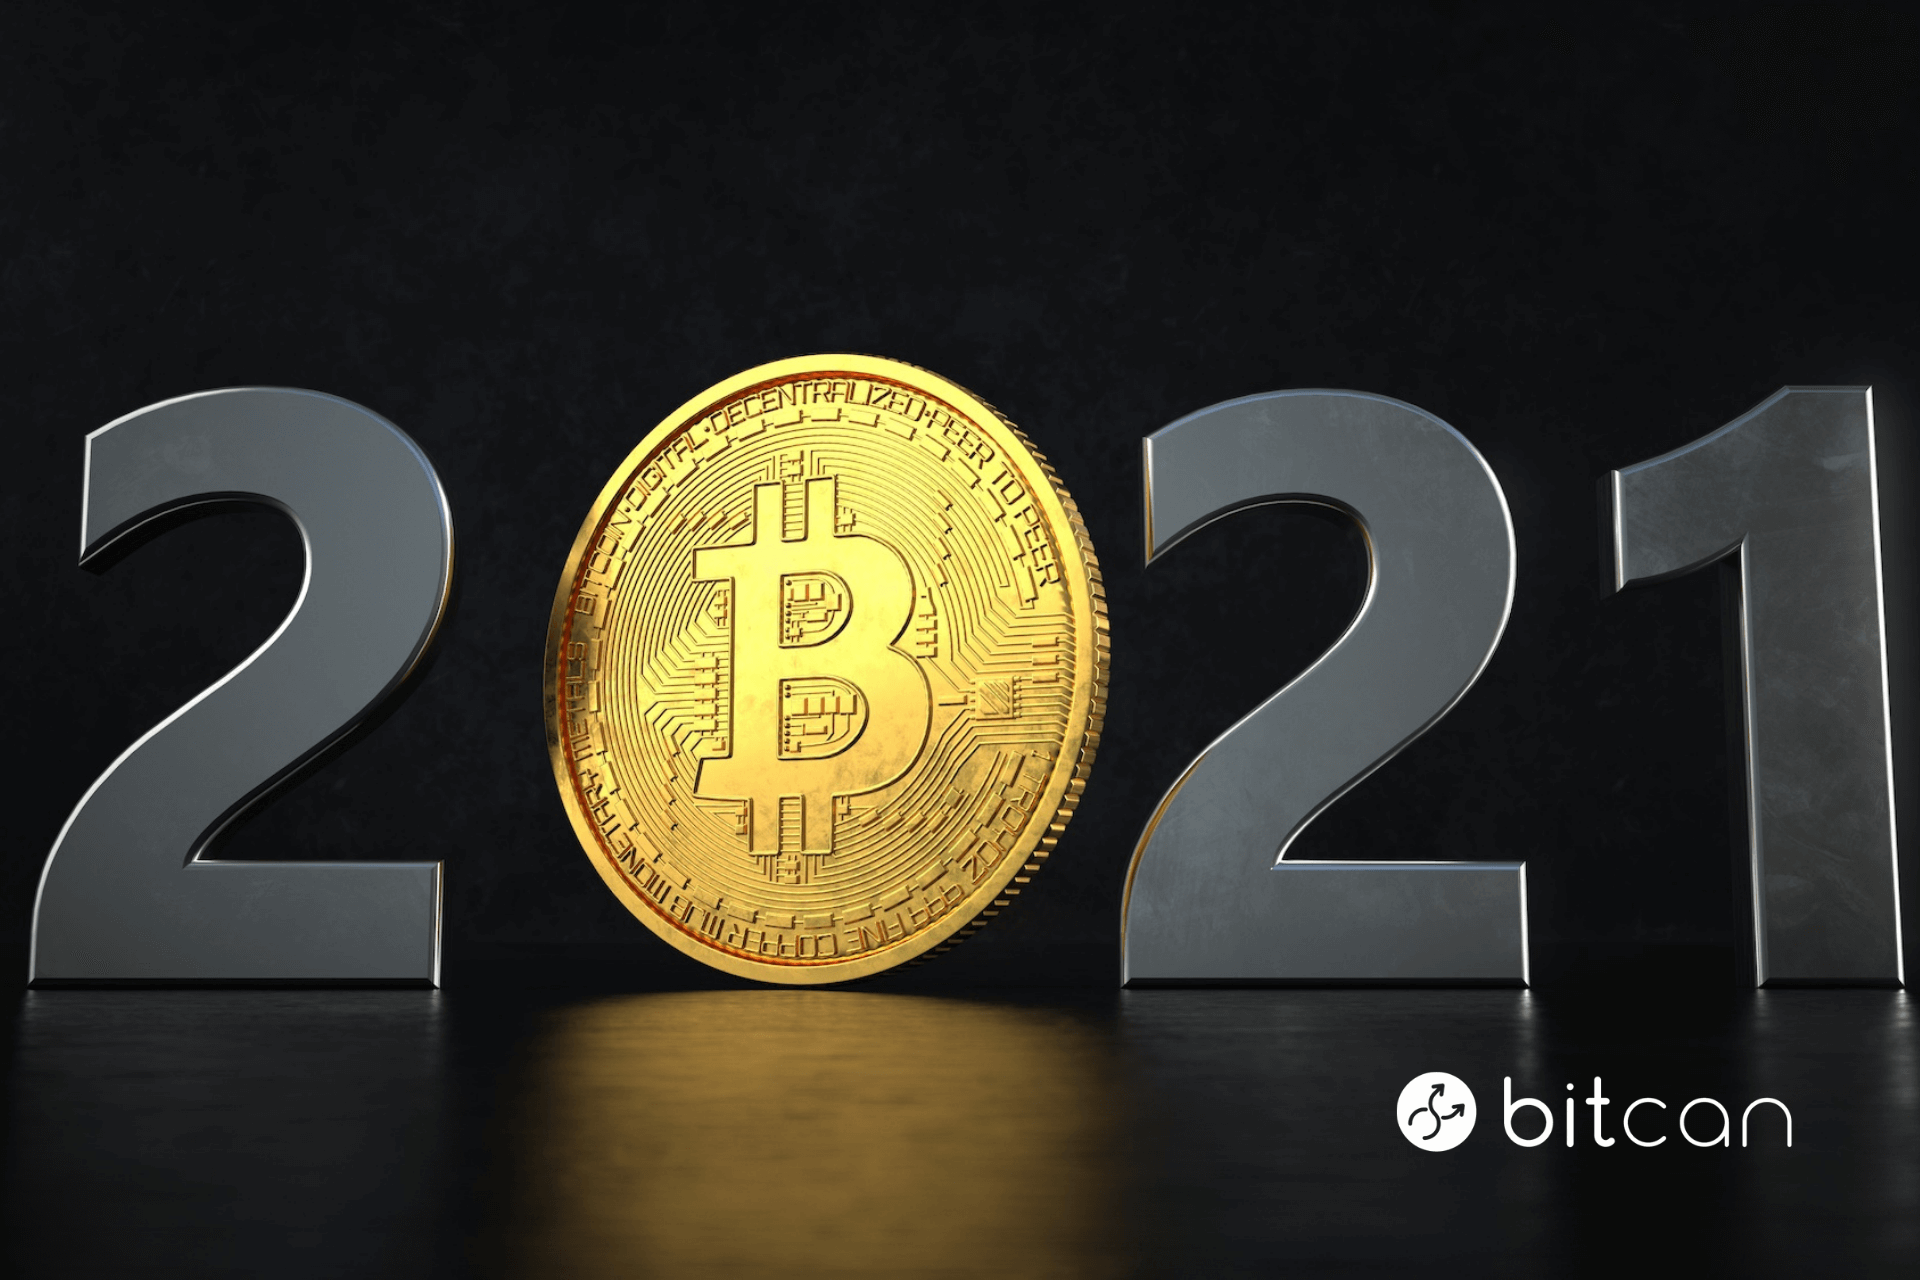 Prognozy dla bitcoina na 2021. Czy cena 100 tys. dolarów jest możliwa?